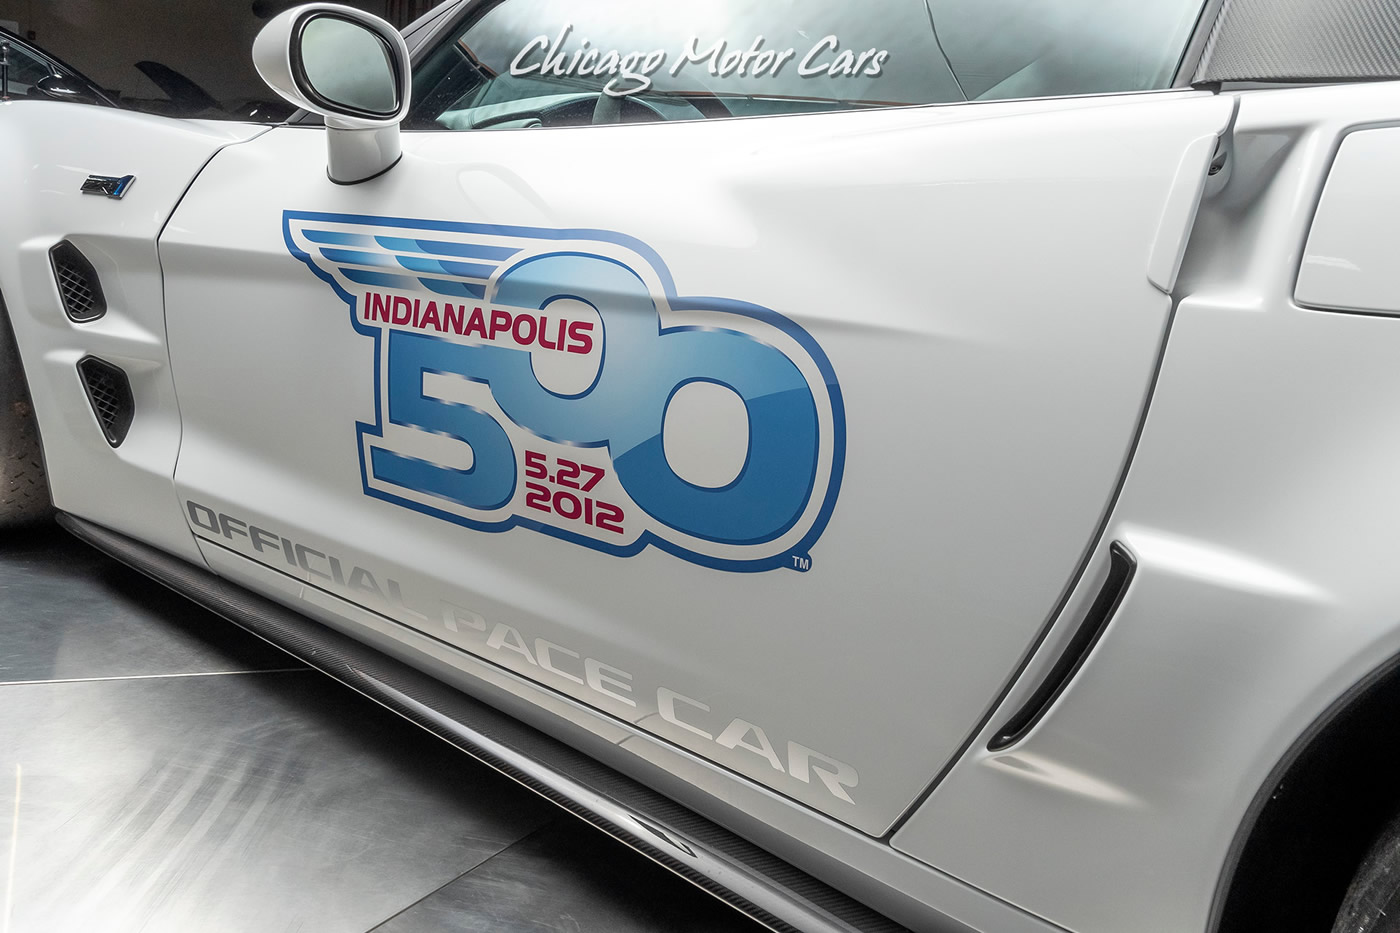 2013 Corvette ZR1 Indianapolis 500 Pace Car - VIN 1G1Y62DT9D5800024